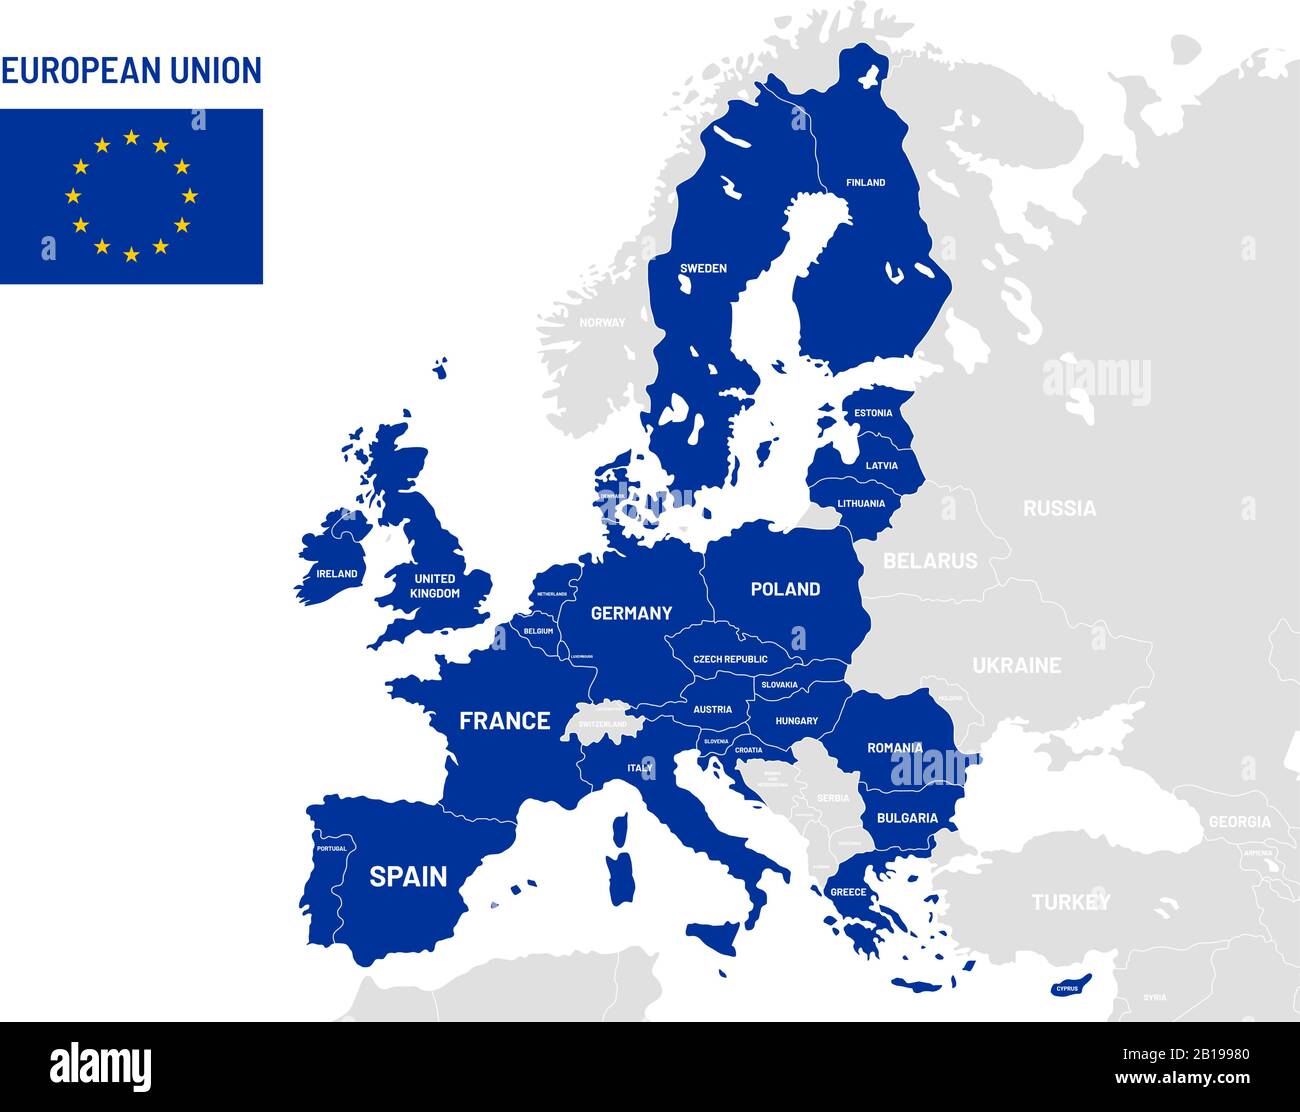 Mappa dei paesi dell'Unione europea. Nomi dei paesi membri dell'UE, mappe geografiche europee illustrazione vettoriale Illustrazione Vettoriale